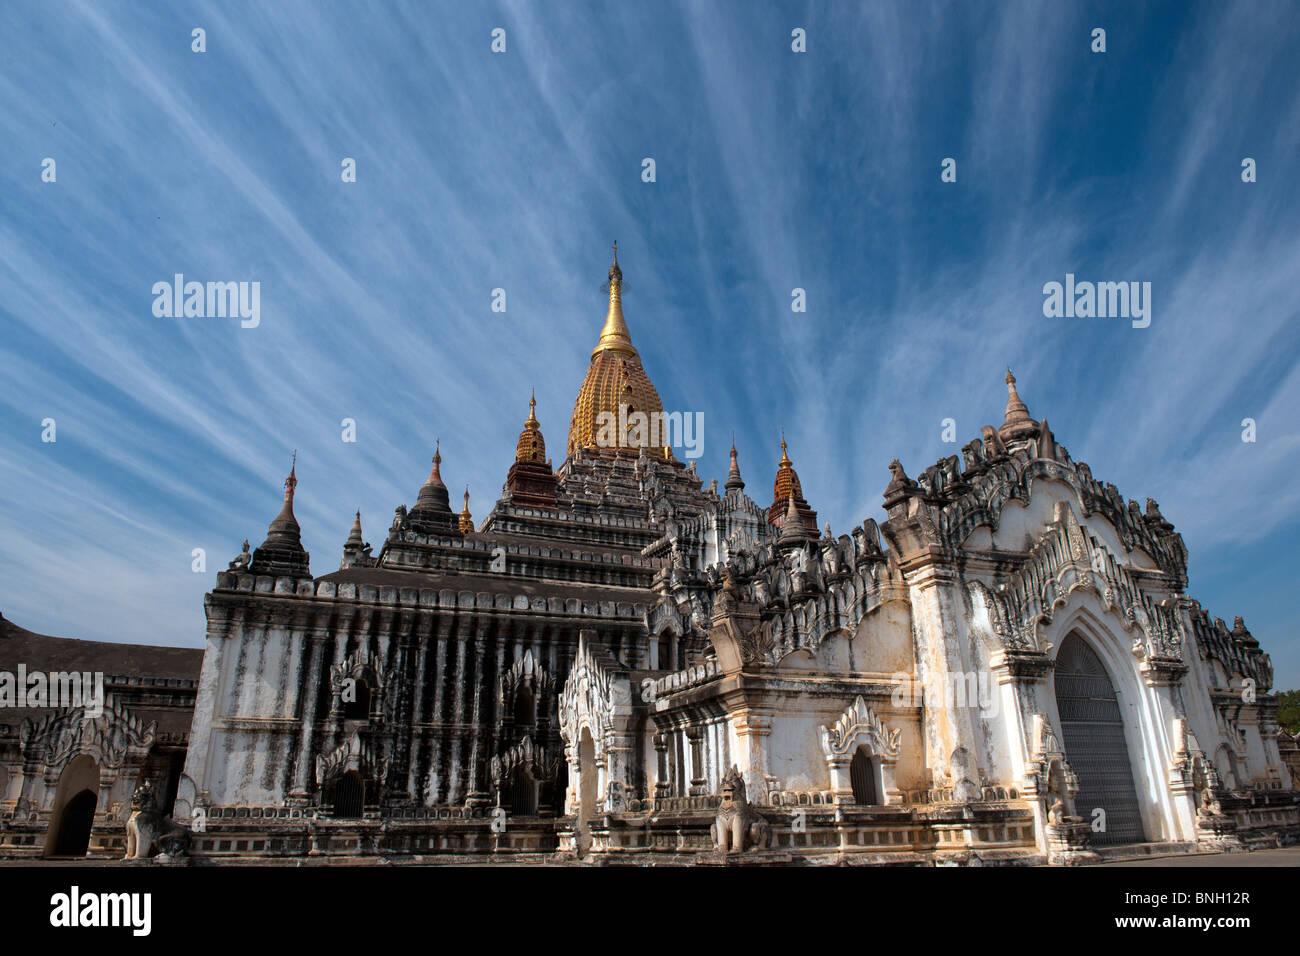 Vue paysage de l'ancienne ville de temple de Bagan, Myanmar temple Ananda montre ou la Birmanie Banque D'Images